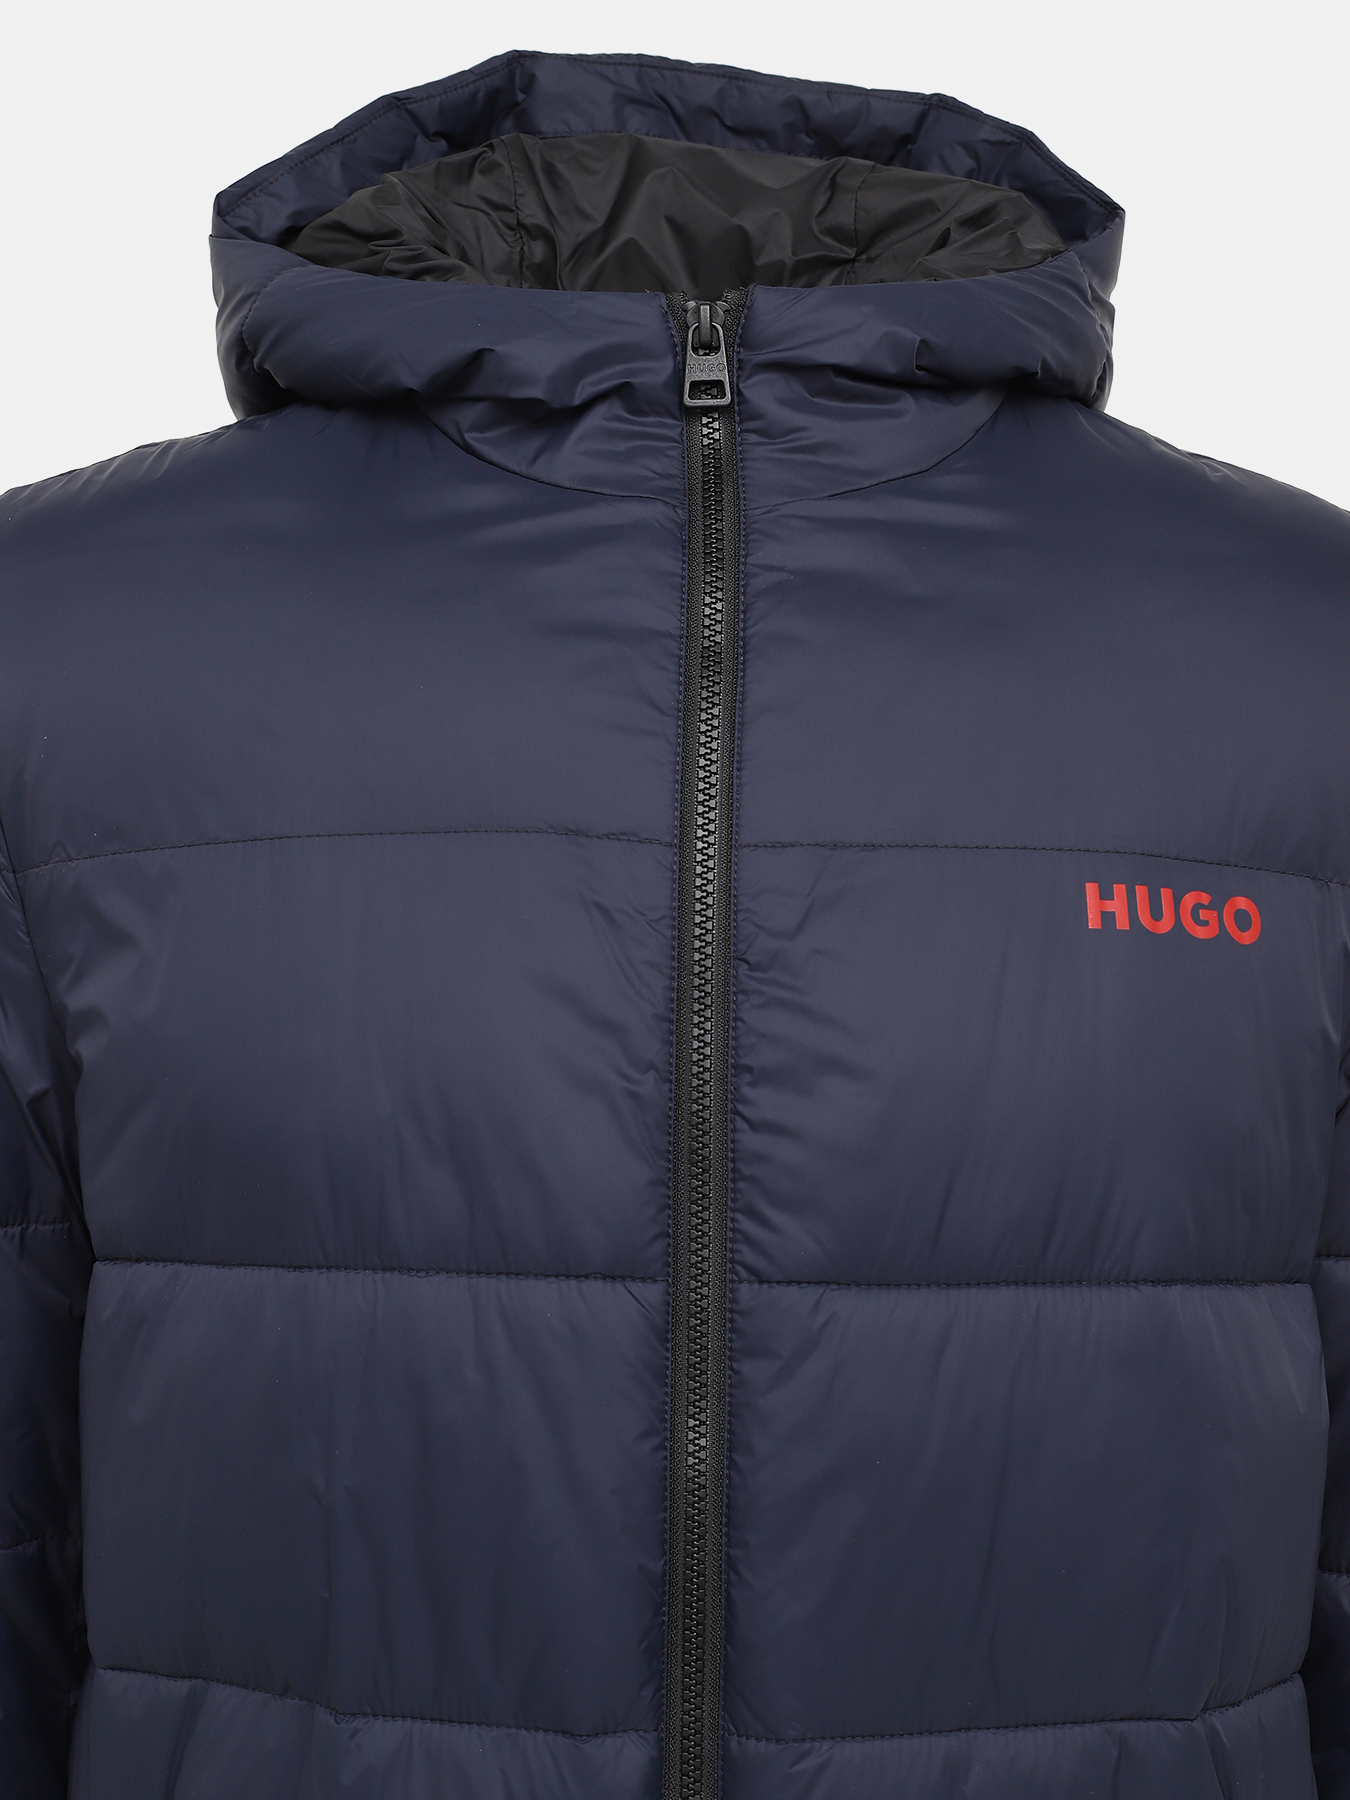 Удлиненная куртка Mati HUGO 426056-045, цвет темно-синий, размер 52-54 - фото 3